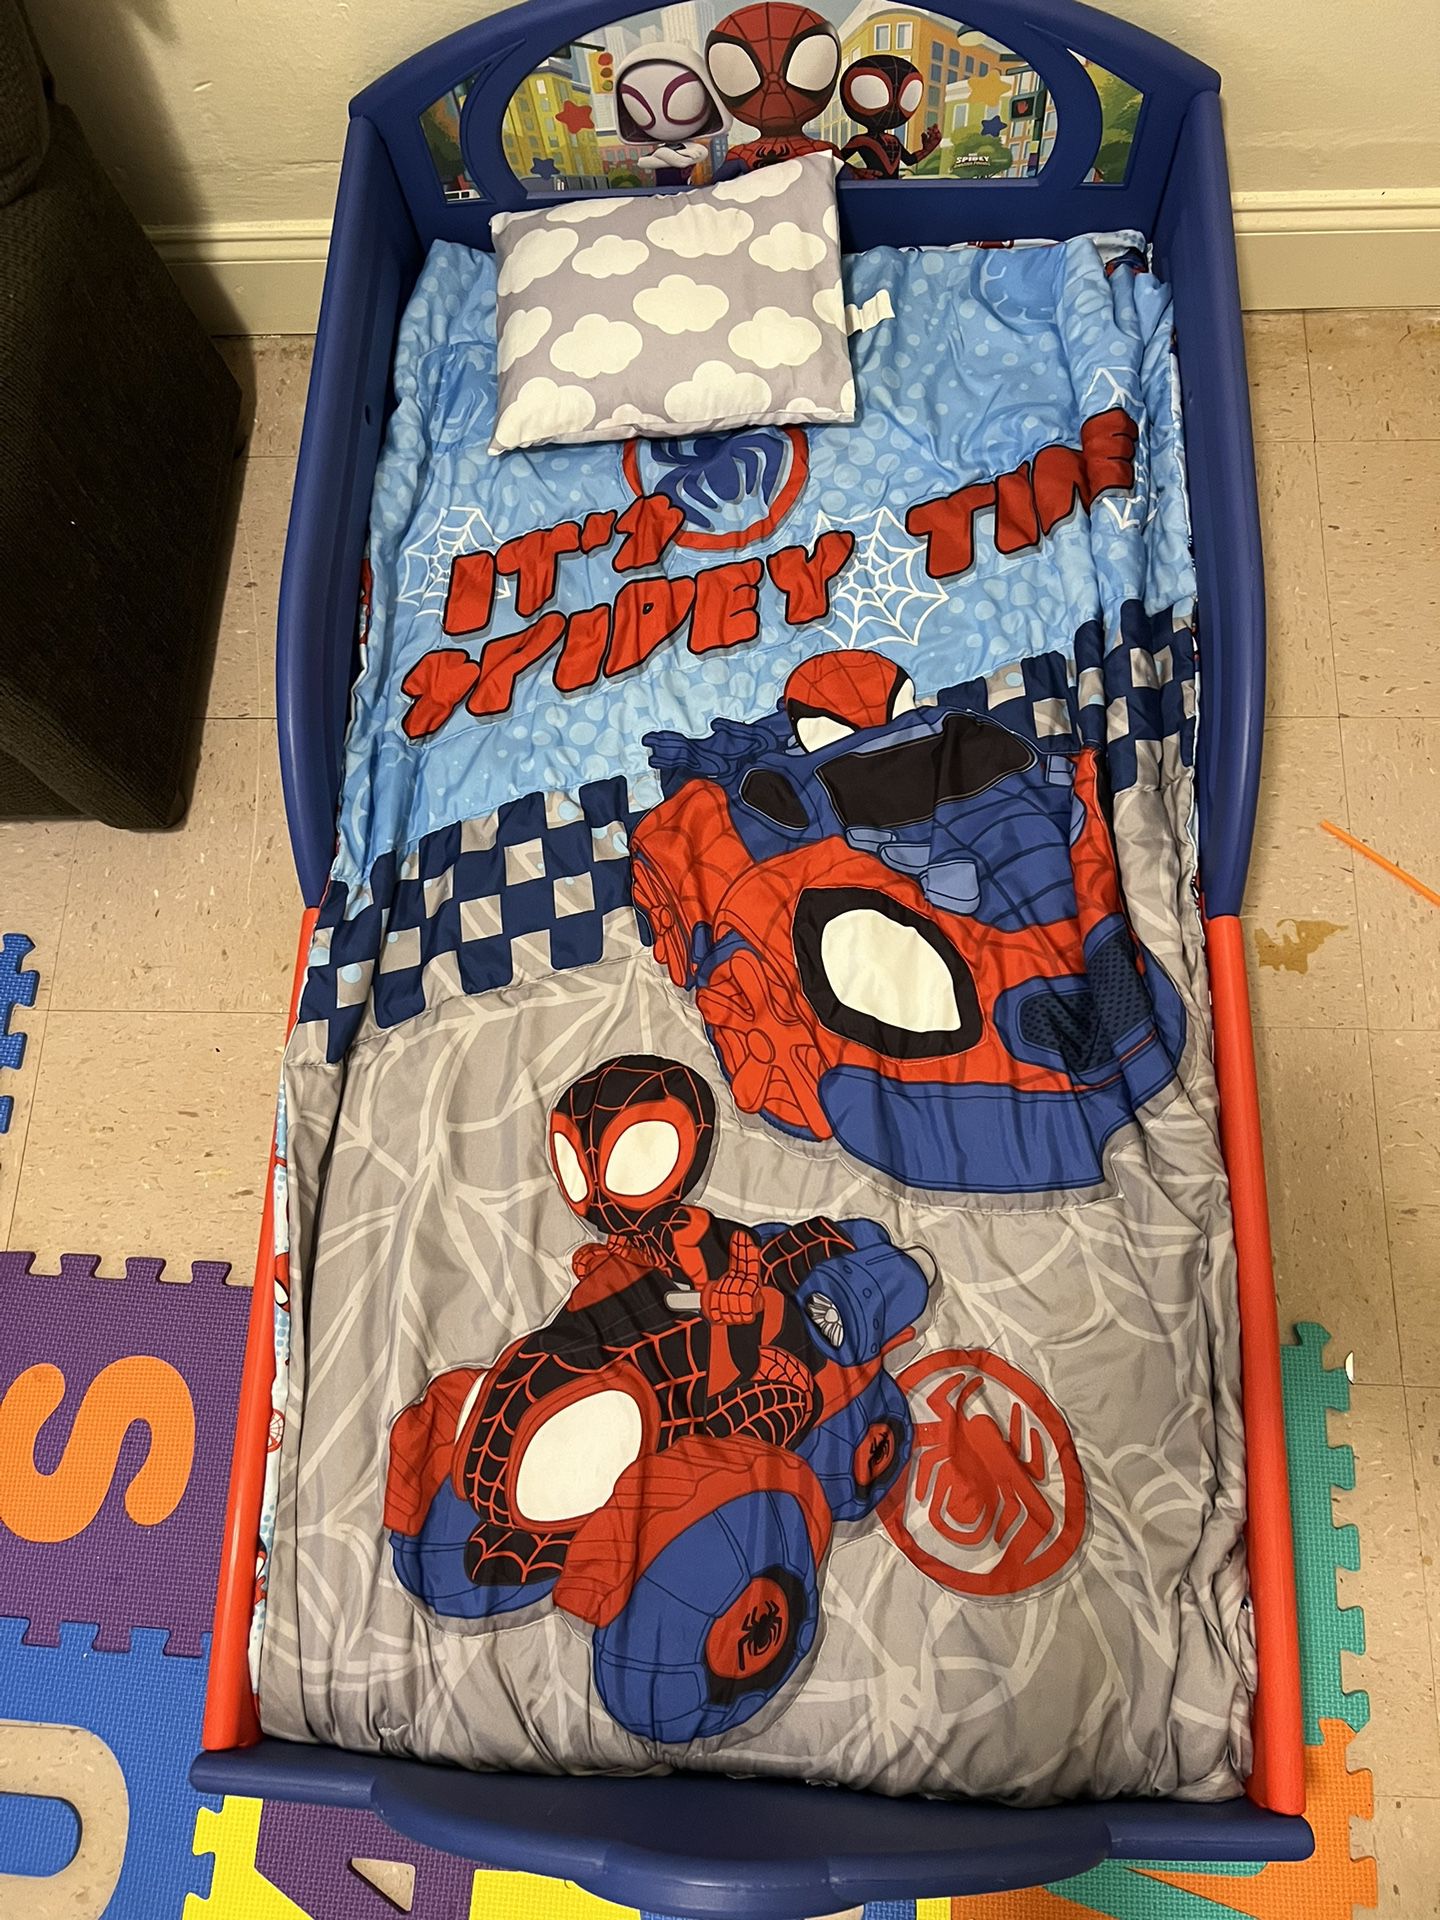 Spidey & friends Toddler Bed